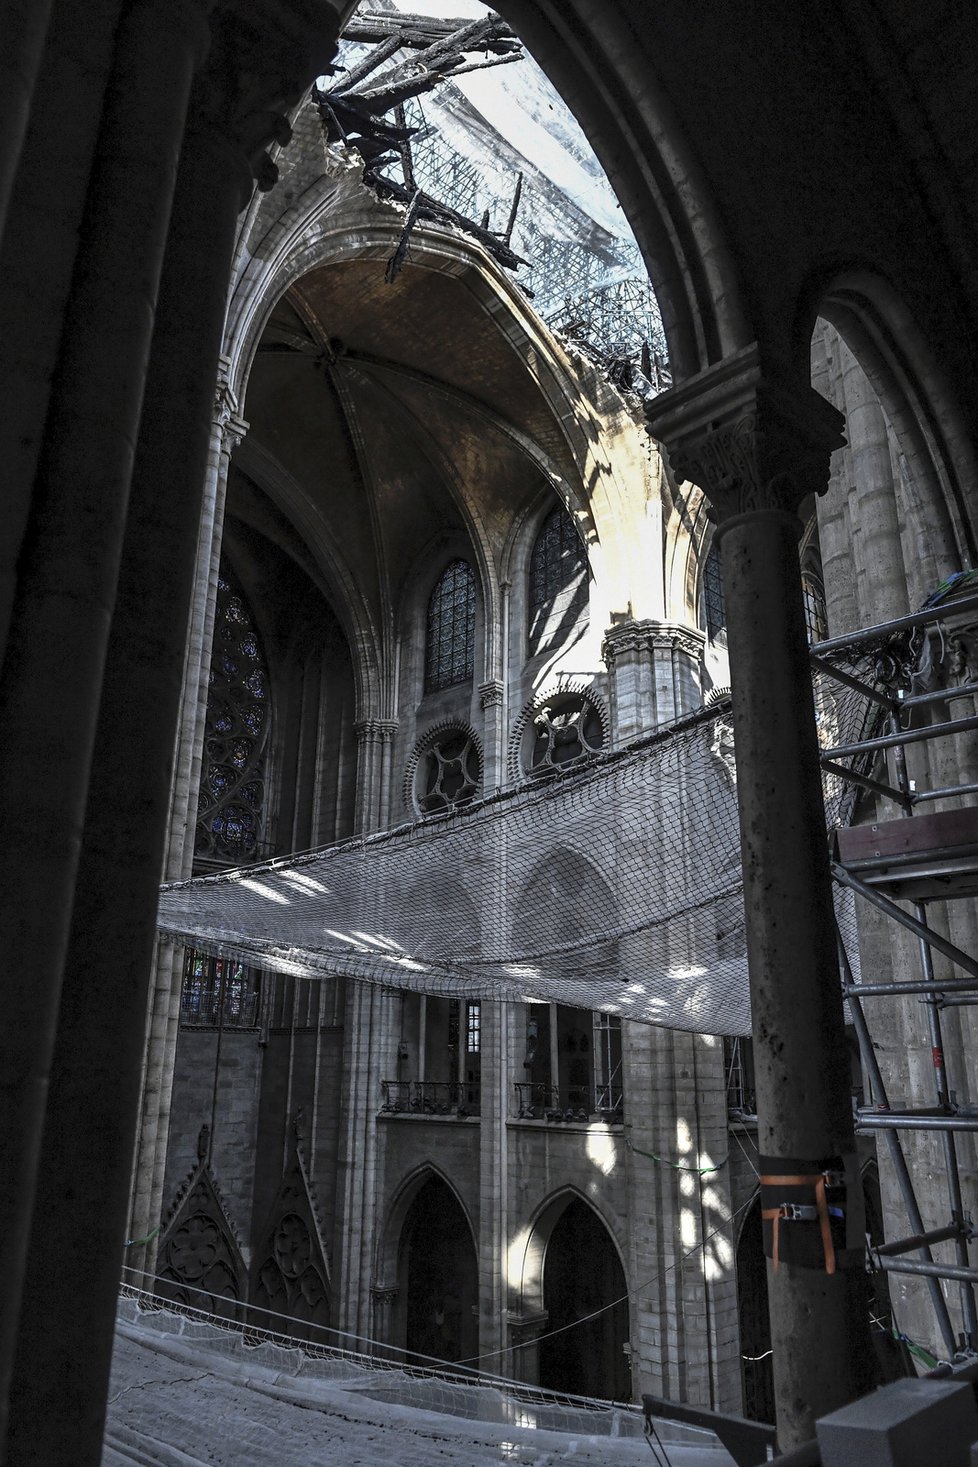 Katedrála Notre-Dame tři měsíce po požáru: Stále probíhá odklízení ohořelého dřeva a hrozí pád střechy.